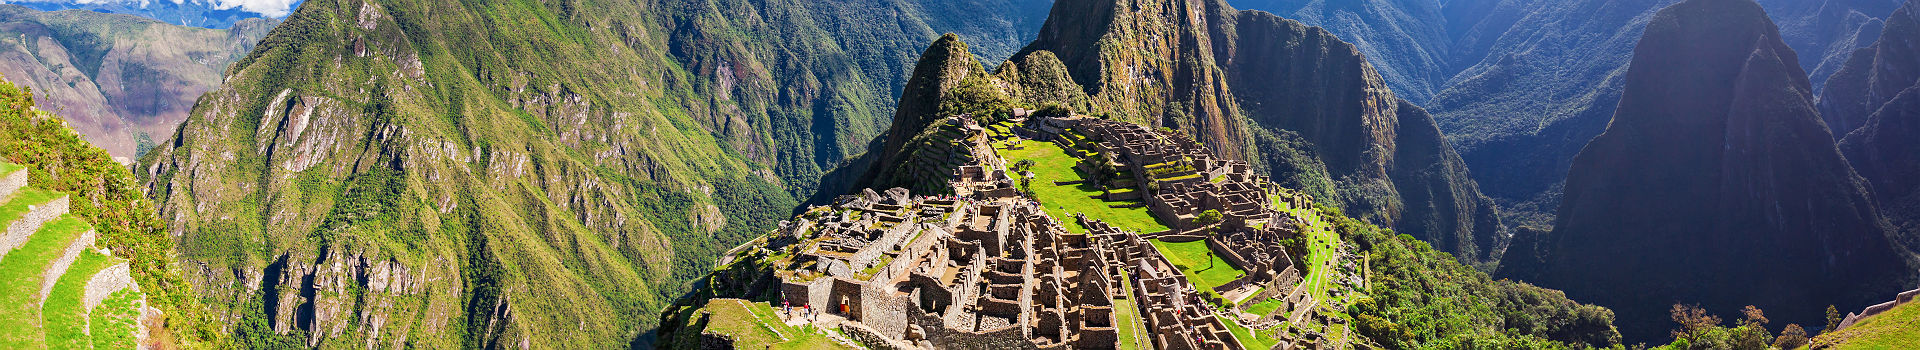 Pérou - Vue sur le site de Machu Picchu et ses paysages escarpées